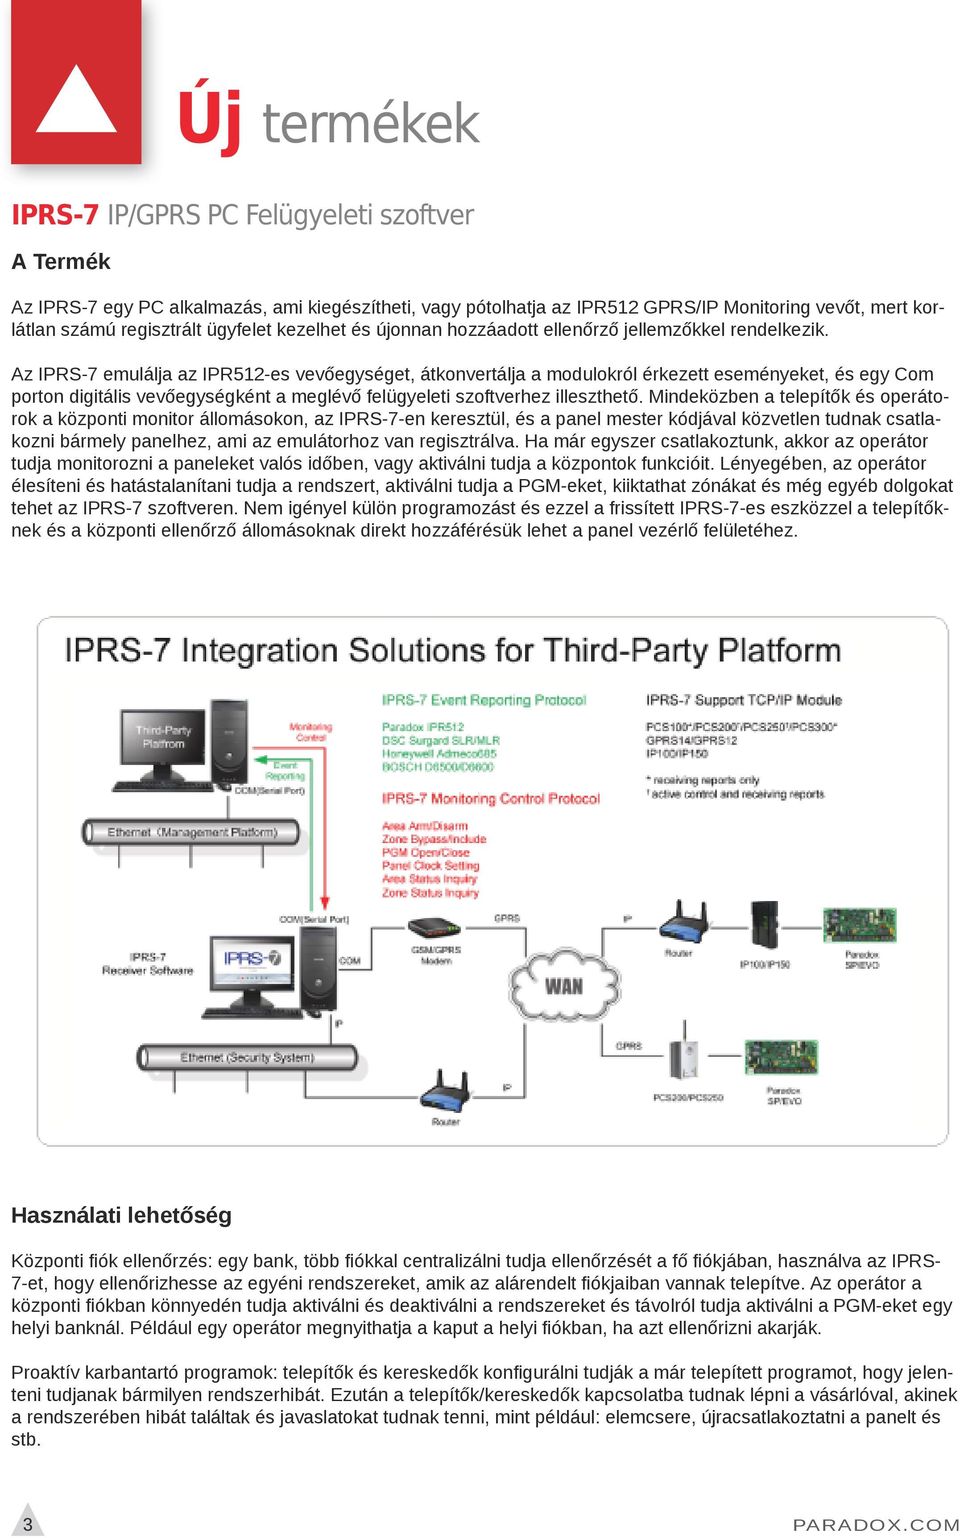 Az IPRS-7 emulálja az IPR512-es vevőegységet, átkonvertálja a modulokról érkezett eseményeket, és egy Com porton digitális vevőegységként a meglévő felügyeleti szoftverhez illeszthető.